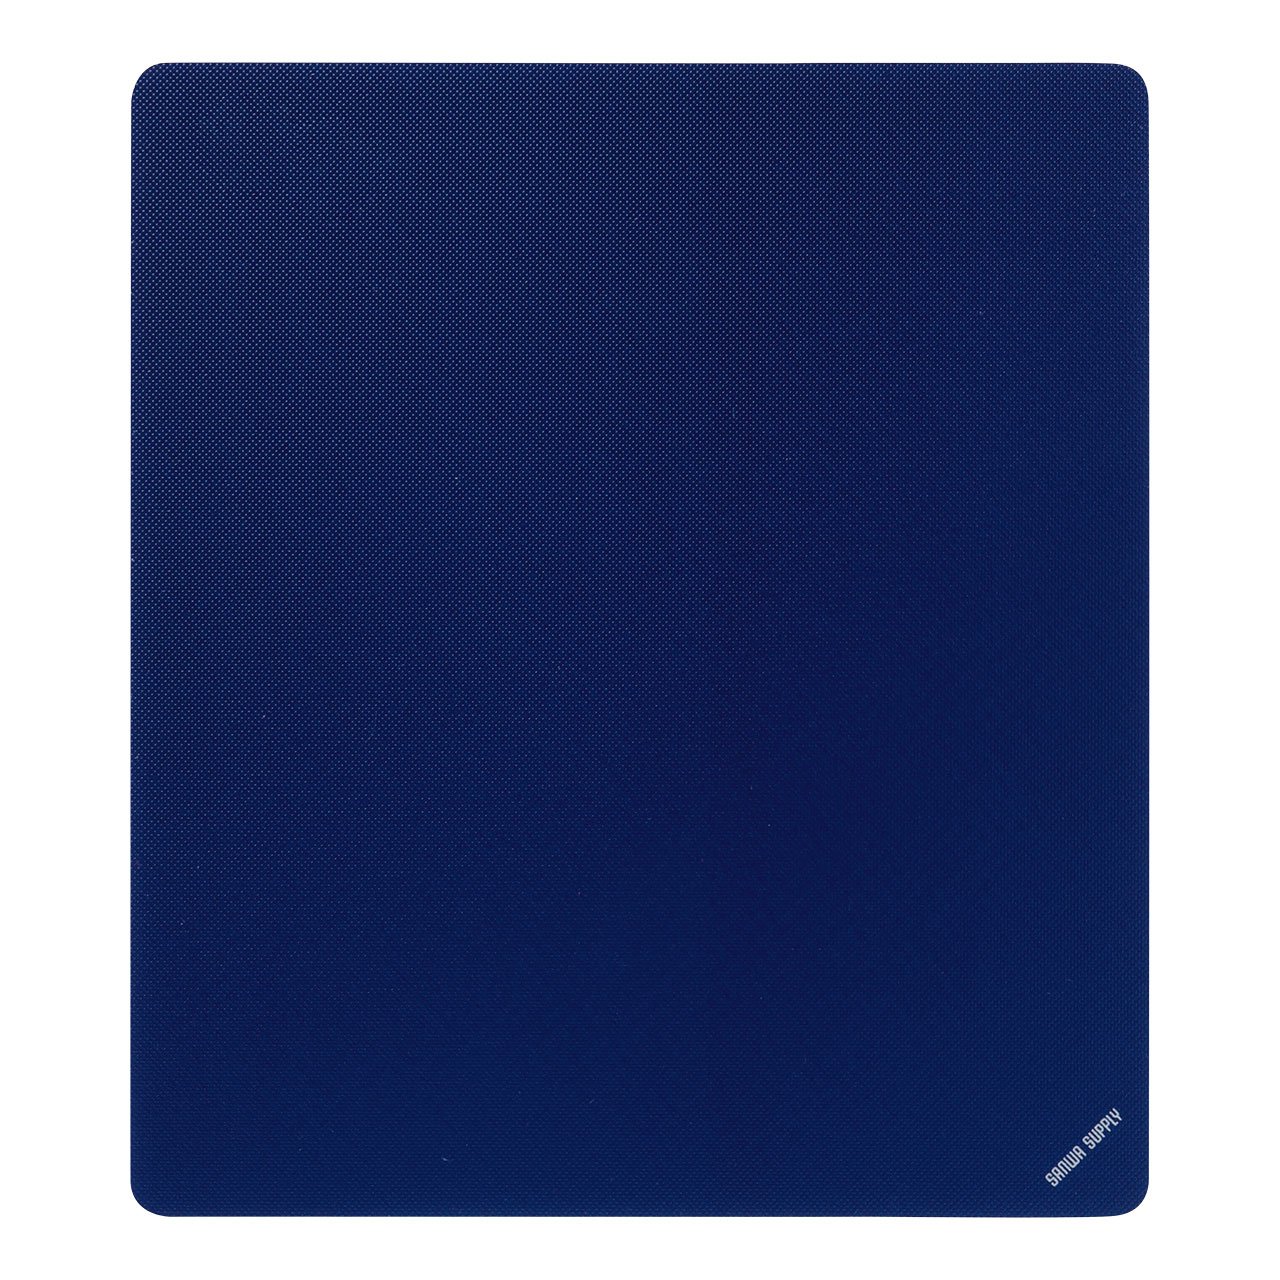 SANWA SUPPLY マウスパッド(Sサイズ、ブルー) MPD-EC25S-BL